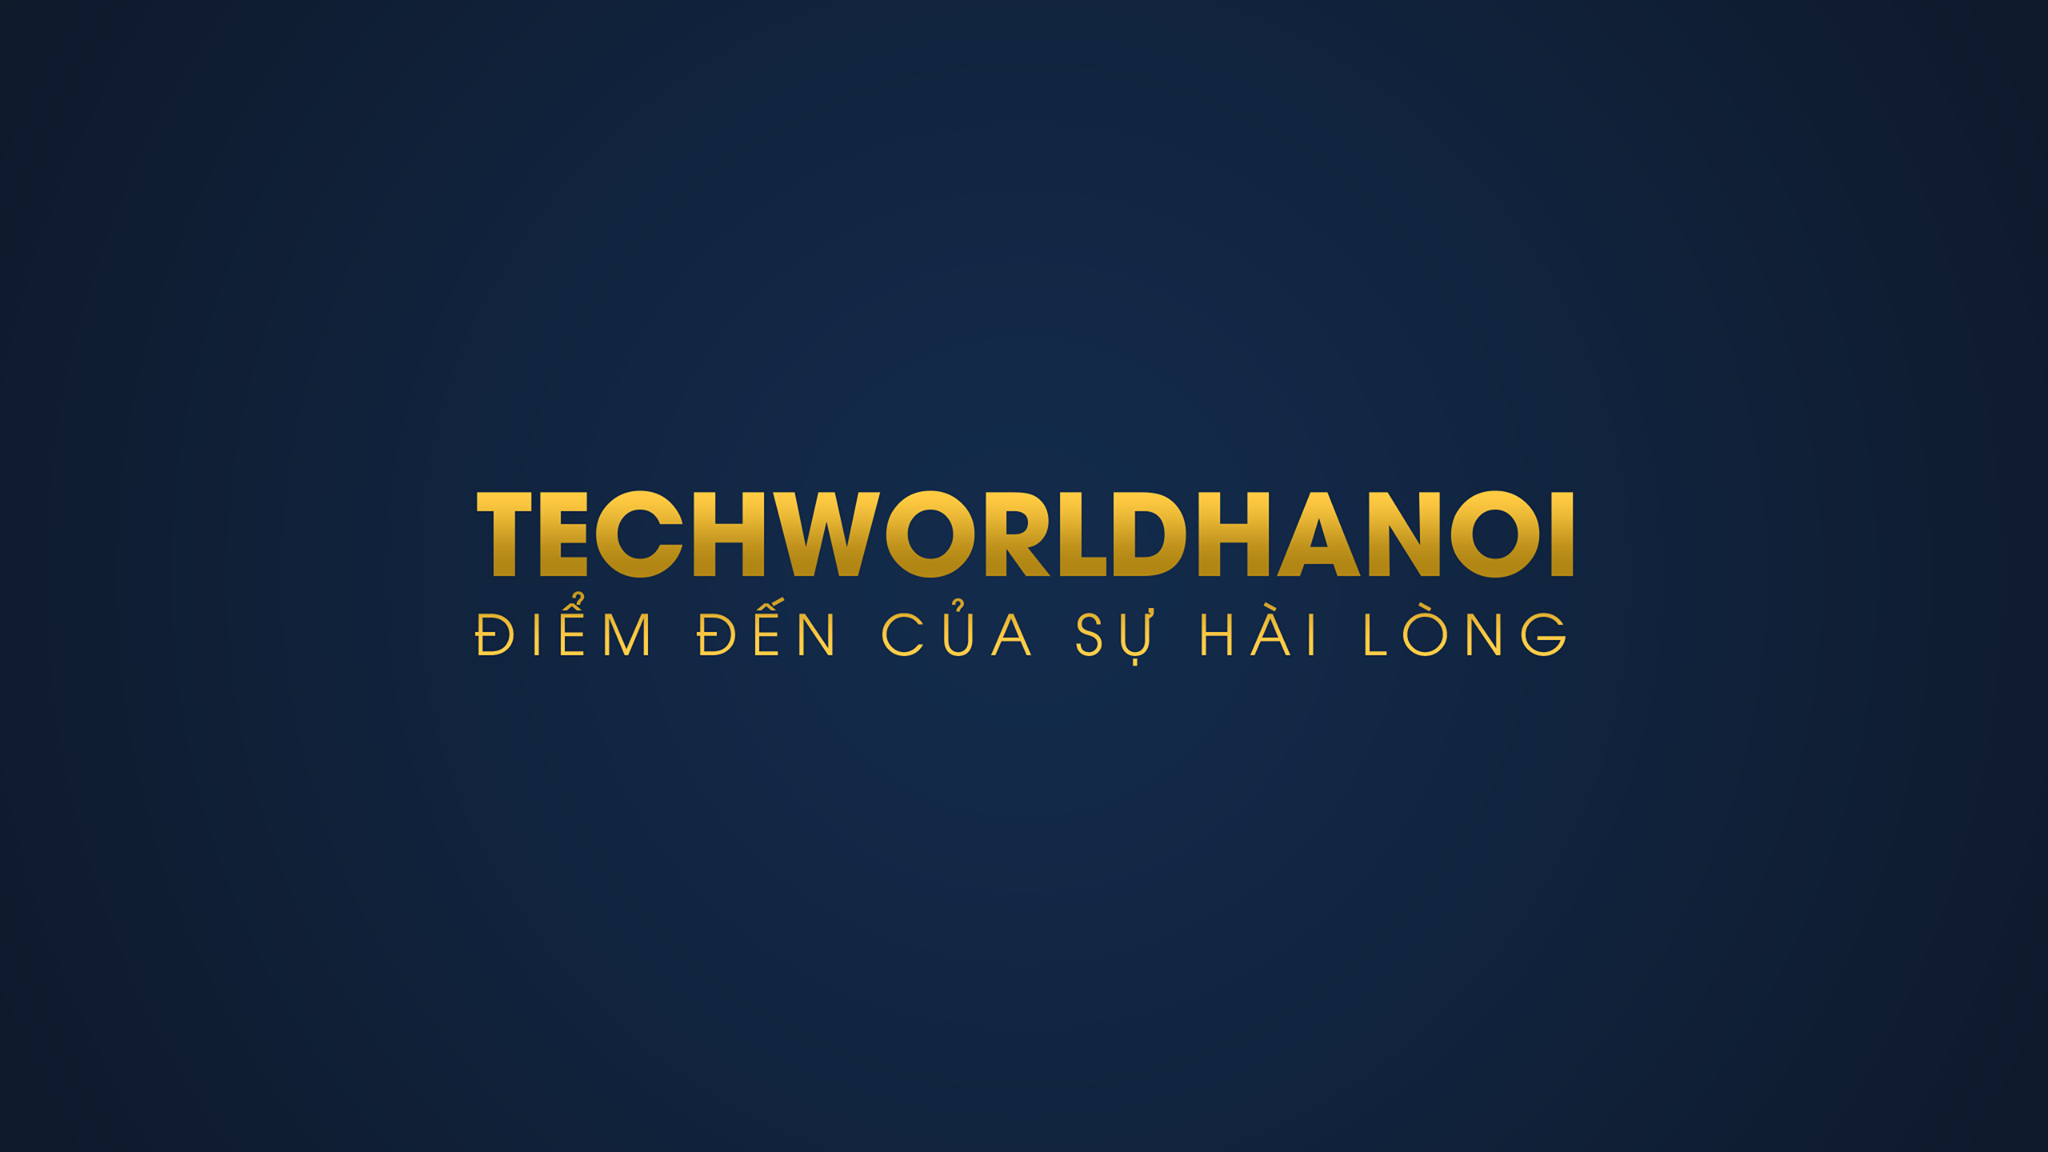 Cover image for Techworldhanoi